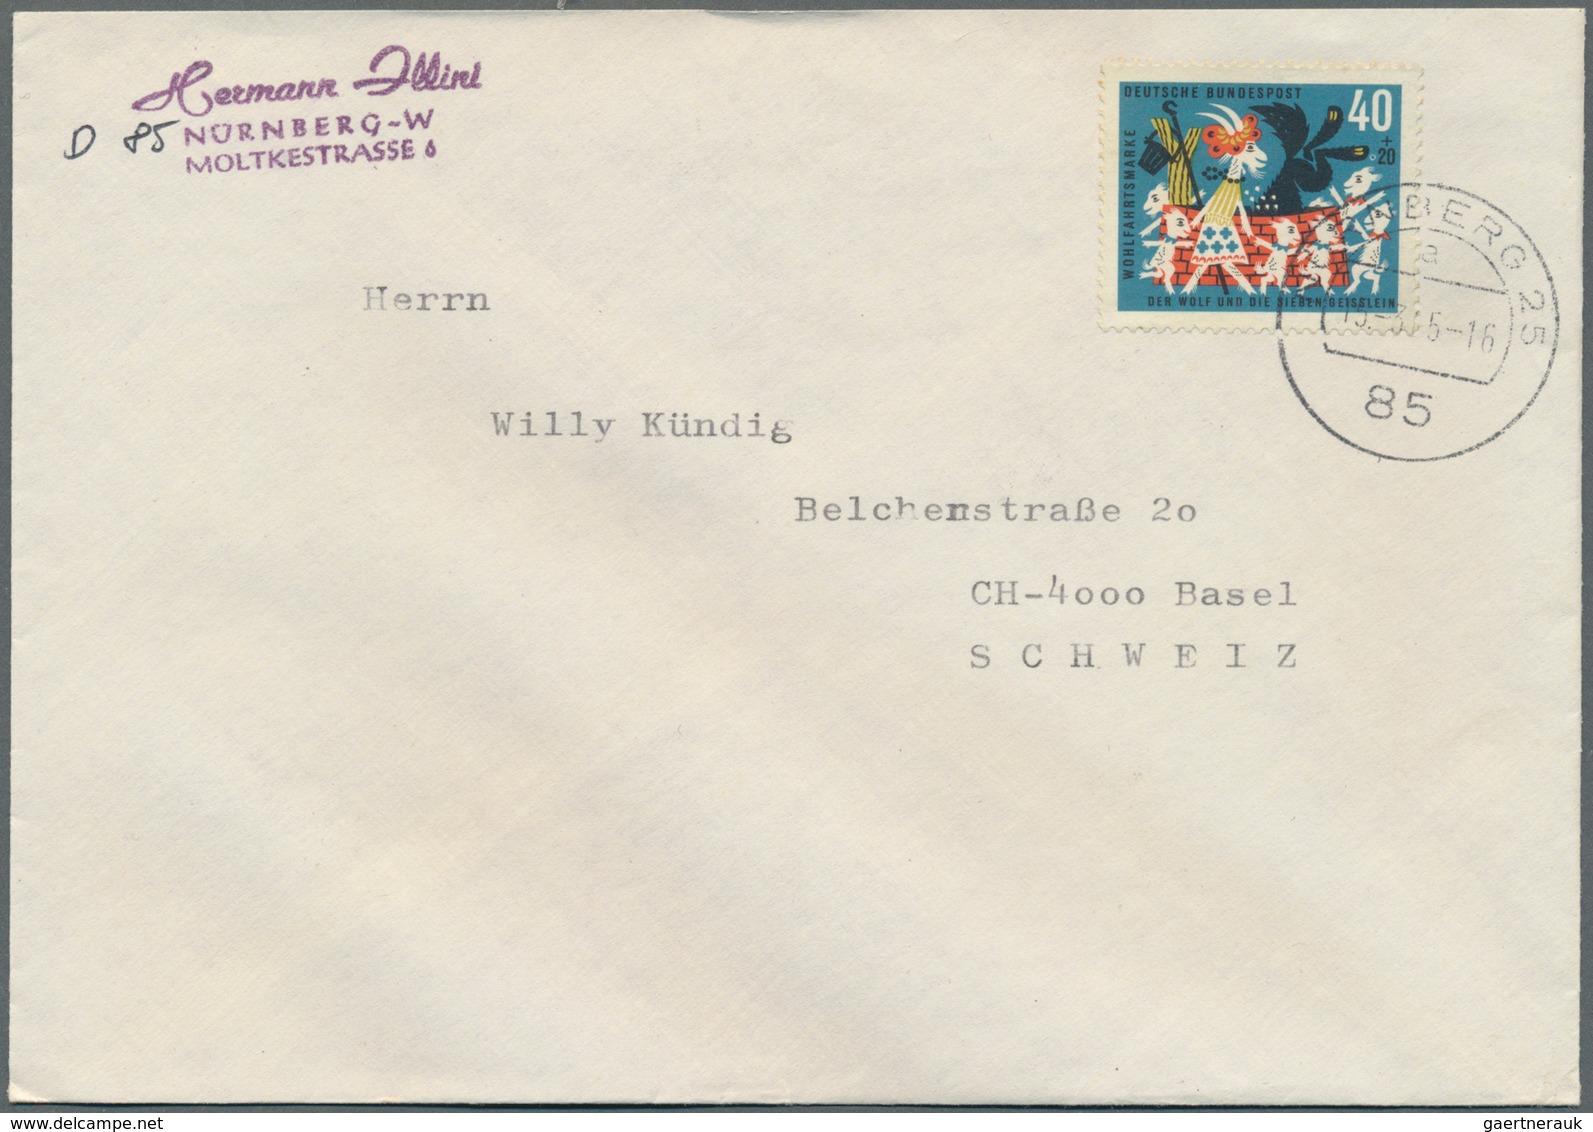 32768 Bundesrepublik Deutschland: 1961/1981, Posten von ca. 280 Briefen und Karten nur mit Sonder- /Zuschl